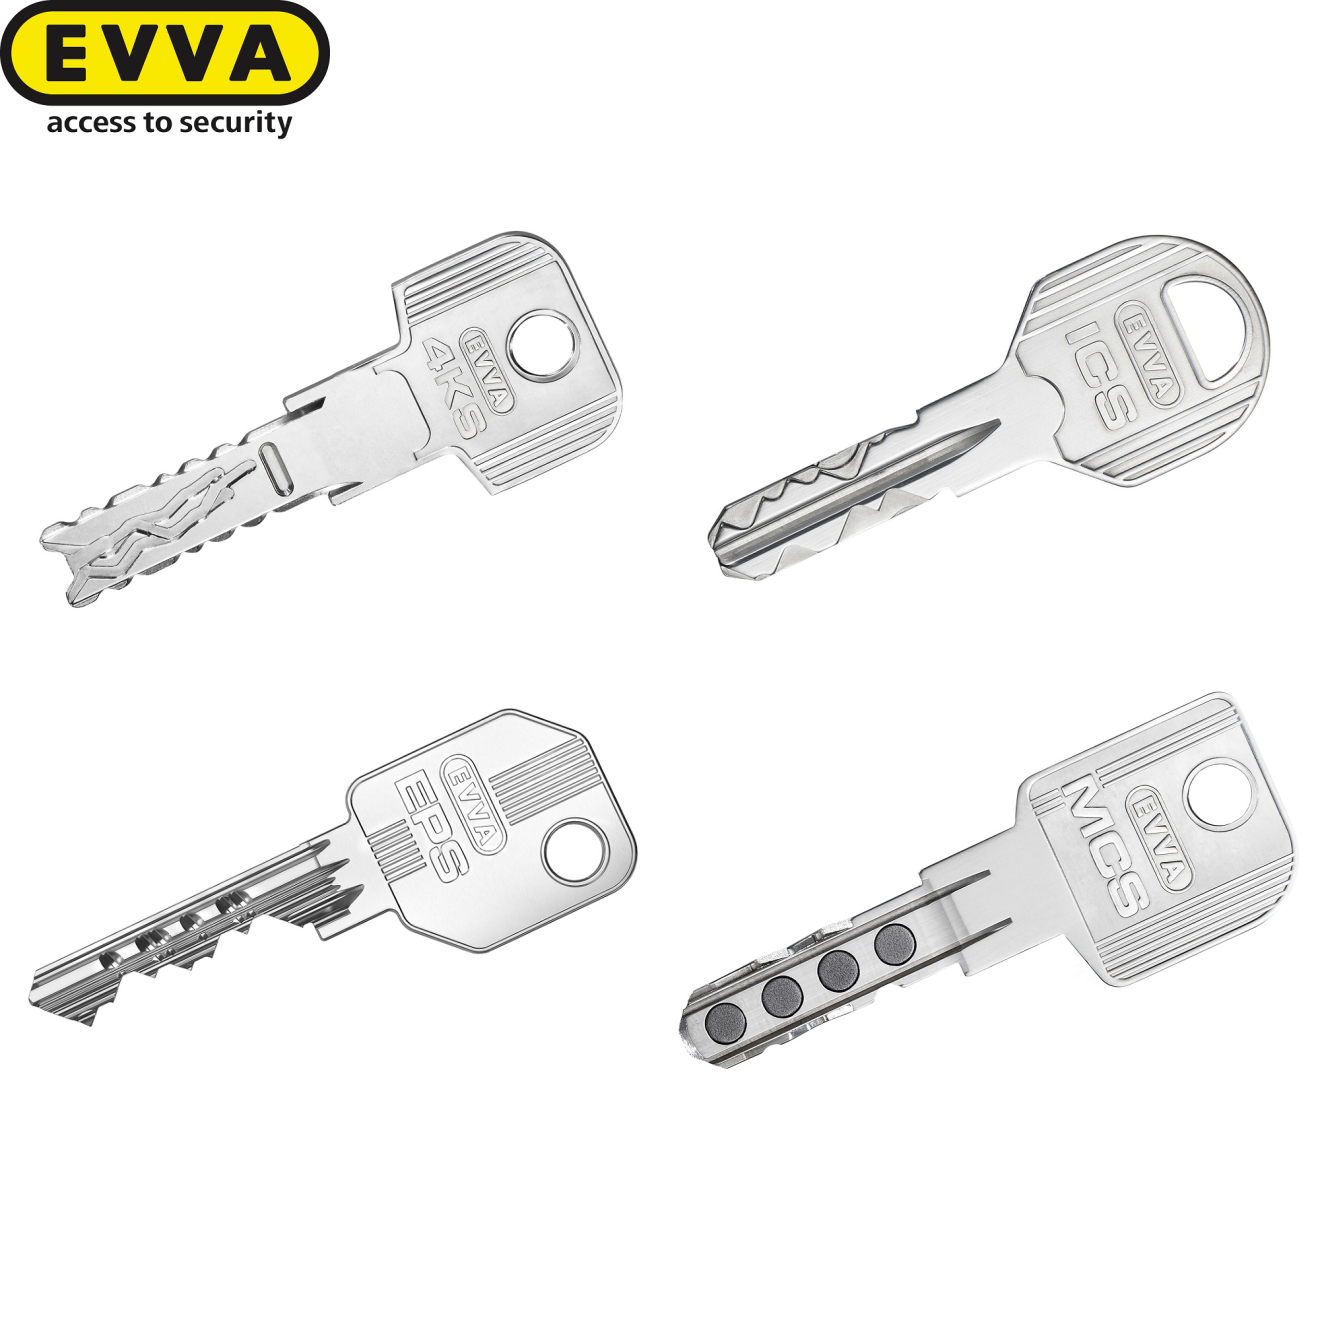 Ersatzschlüssel EVVA Konfigurator für alle Systeme